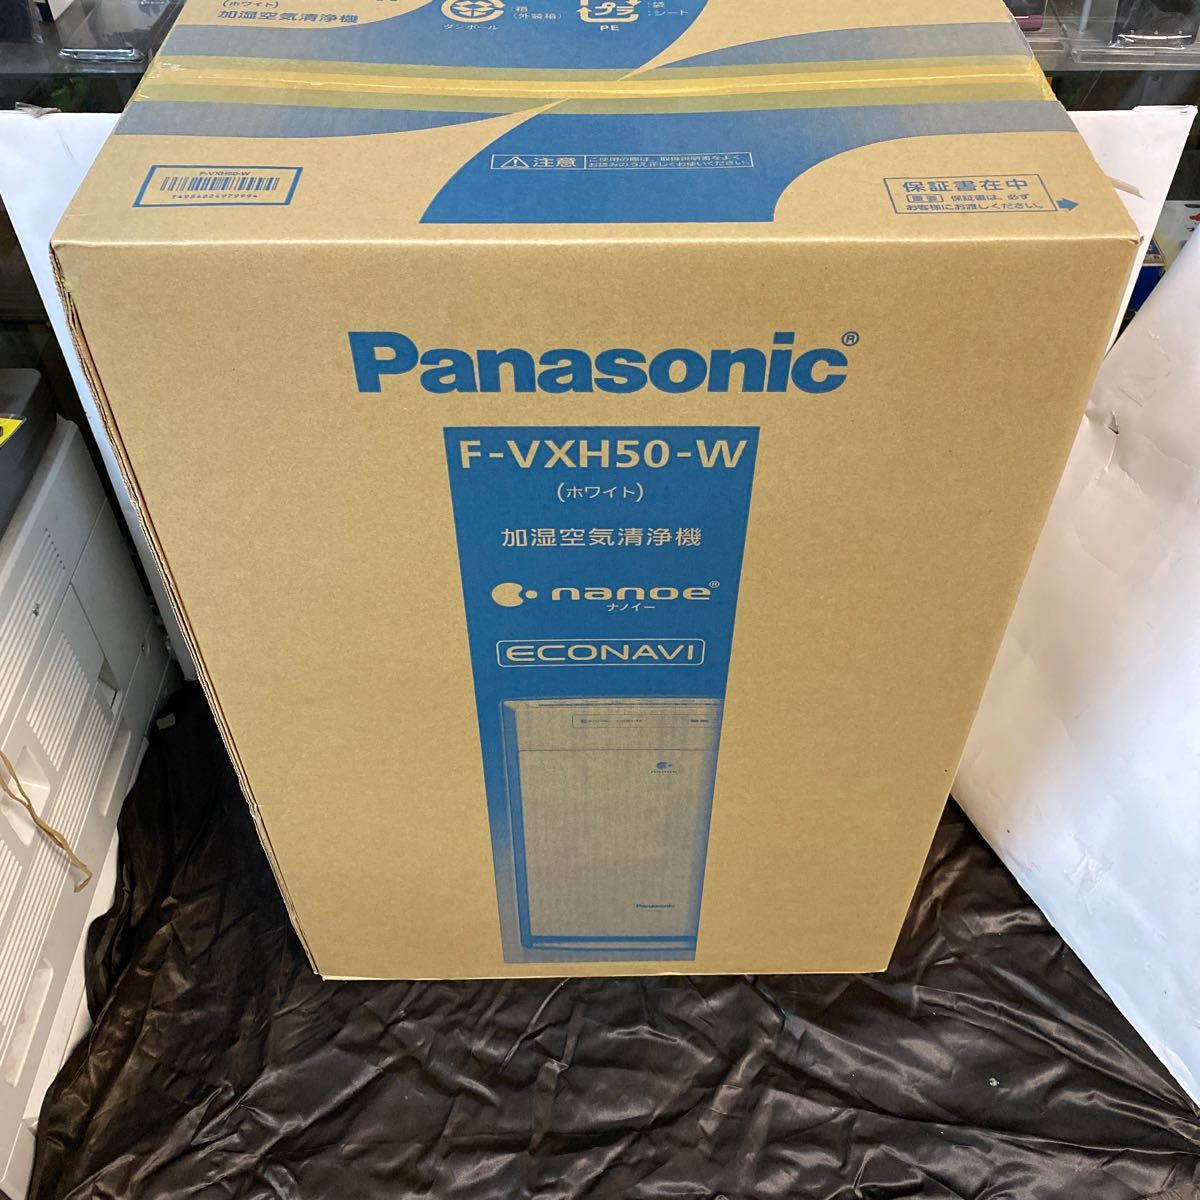  нераспечатанный товар Panasonic Panasonic очиститель воздуха F-VXH50-W Panasonic 